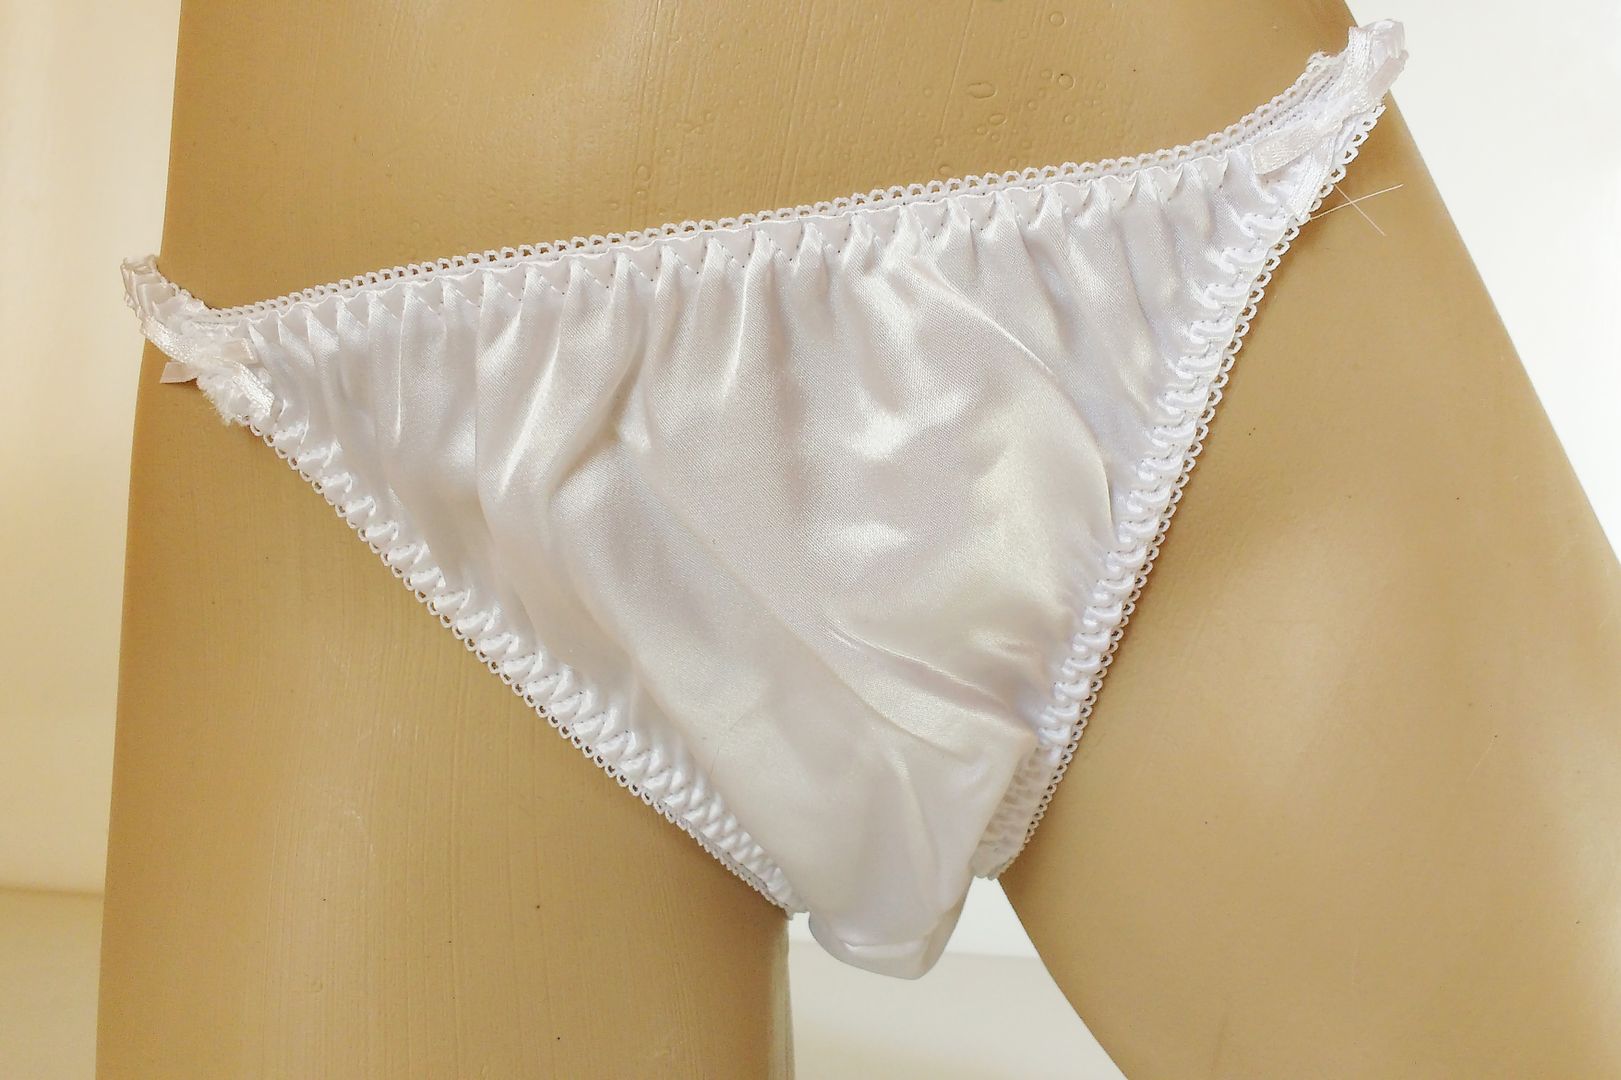 Silky Virgin White Satin String Bikini Panties Tanga Knickers Medium 12